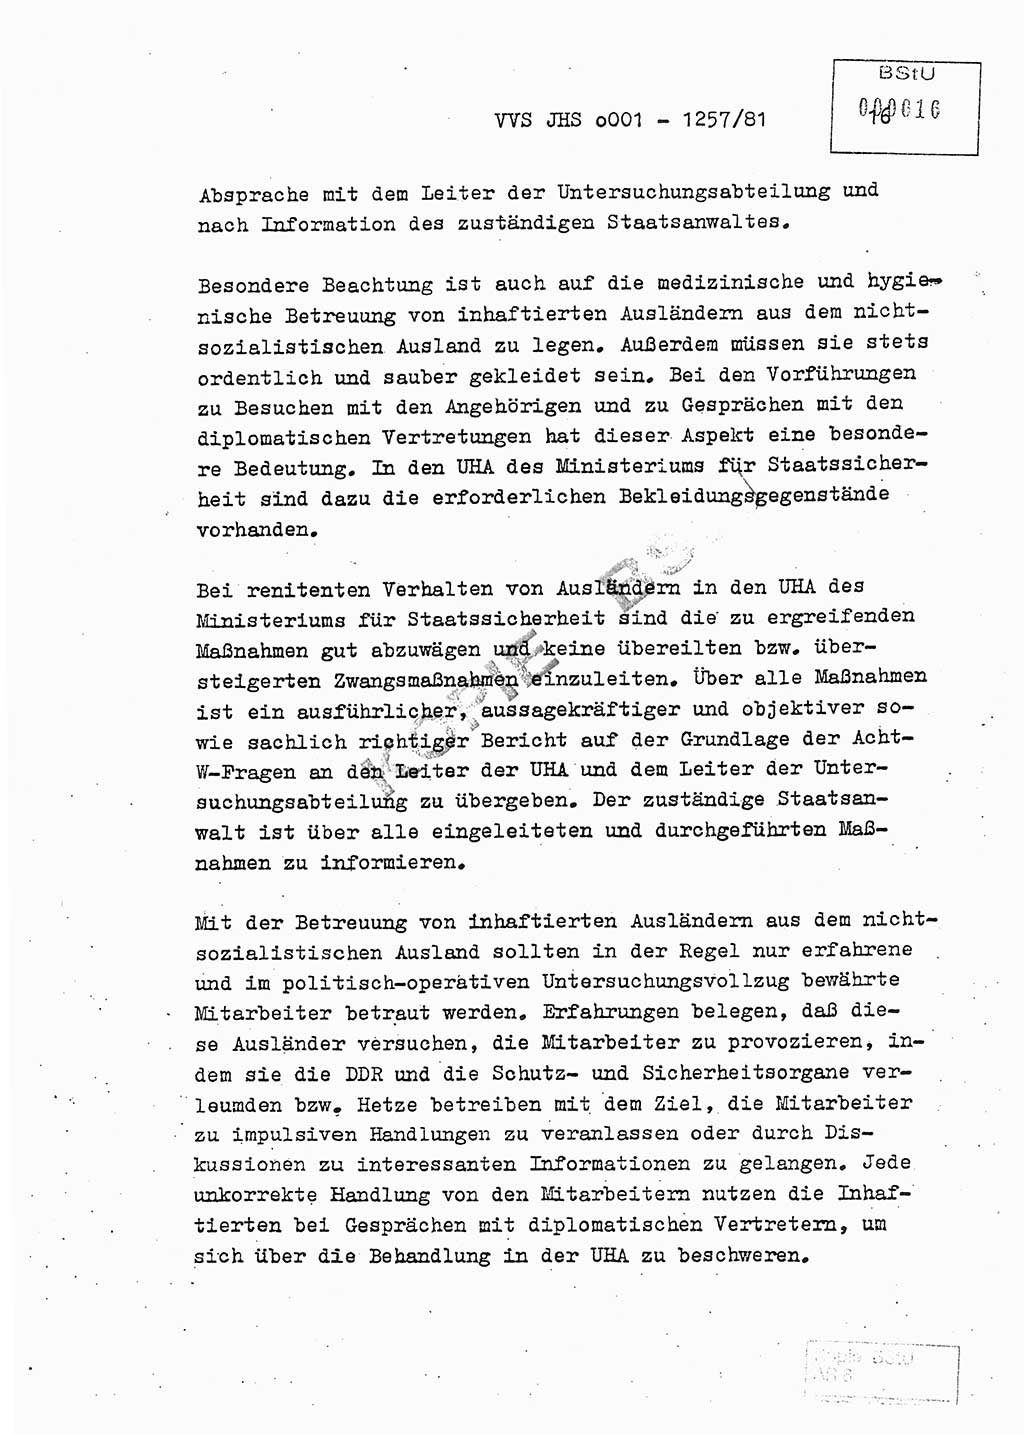 Fachschulabschlußarbeit Unterleutnant Dieter Möller (BV Rst. Abt. ⅩⅣ), Ministerium für Staatssicherheit (MfS) [Deutsche Demokratische Republik (DDR)], Juristische Hochschule (JHS), Vertrauliche Verschlußsache (VVS) o001-1257/81, Potsdam 1982, Seite 16 (FS-Abschl.-Arb. MfS DDR JHS VVS o001-1257/81 1982, S. 16)